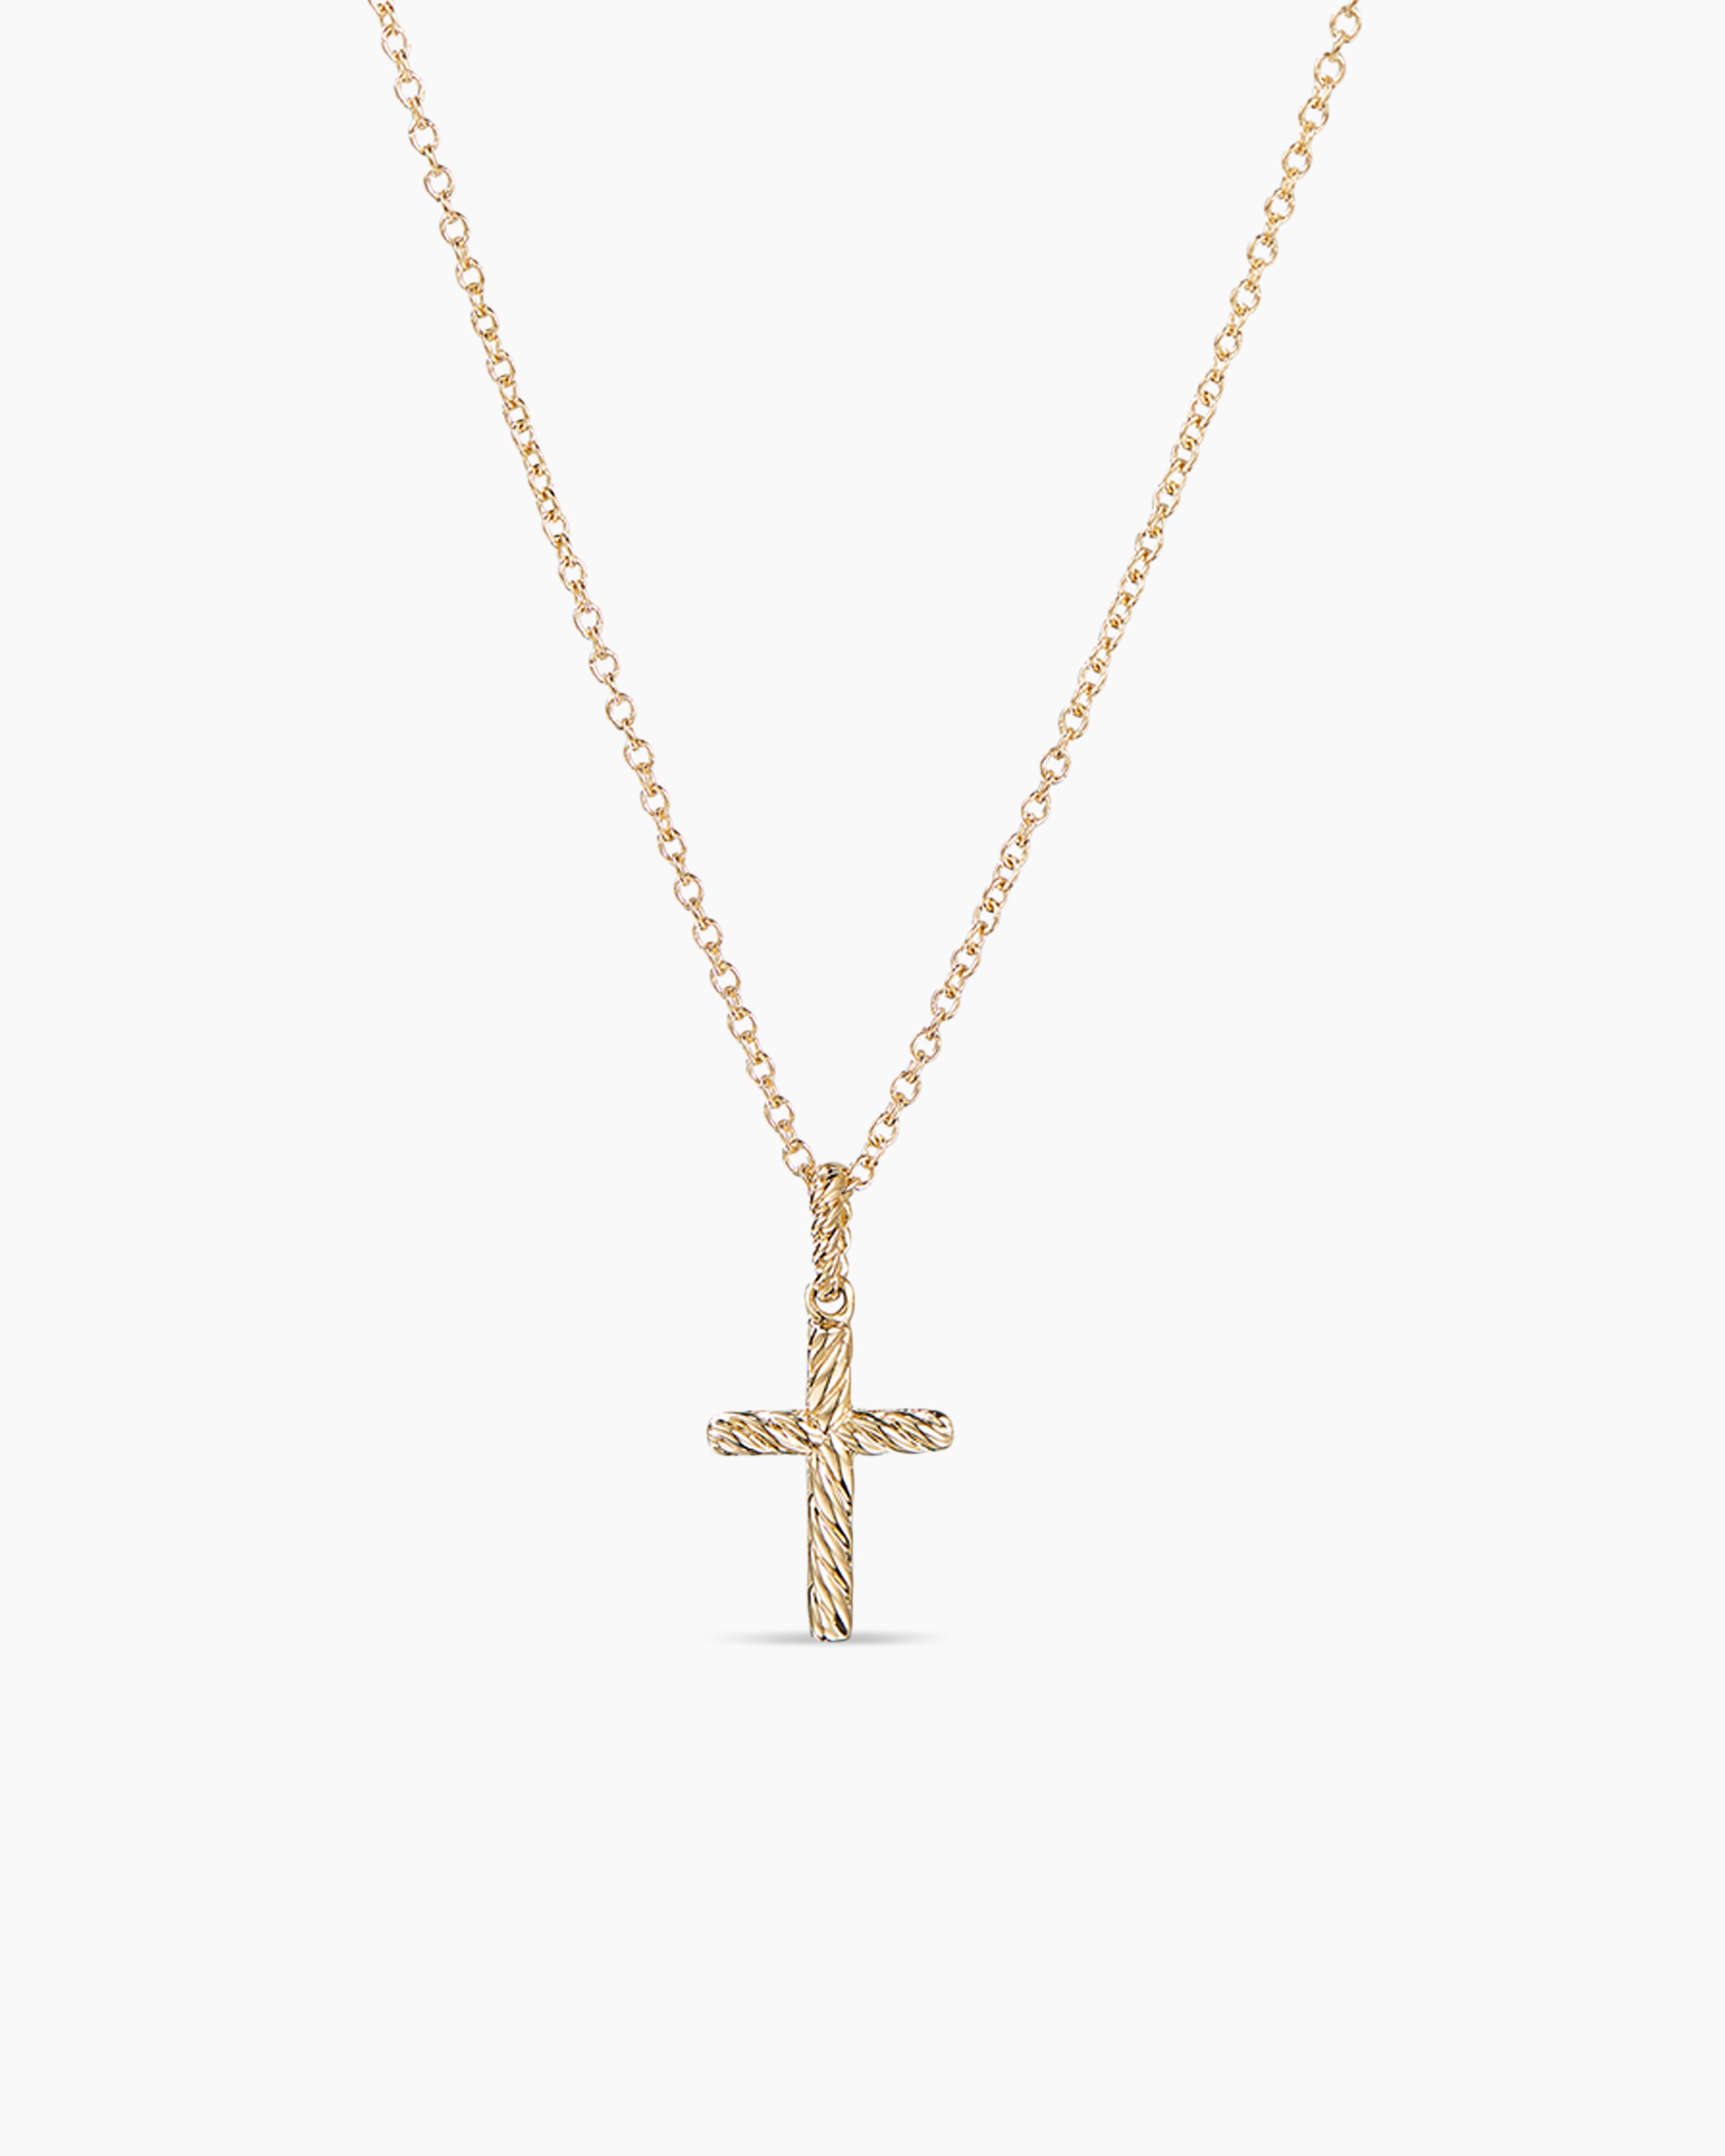 Buy 925 Sterling Silver Pink Enamel Heart Open Cross Pendant Necklace  Children 16